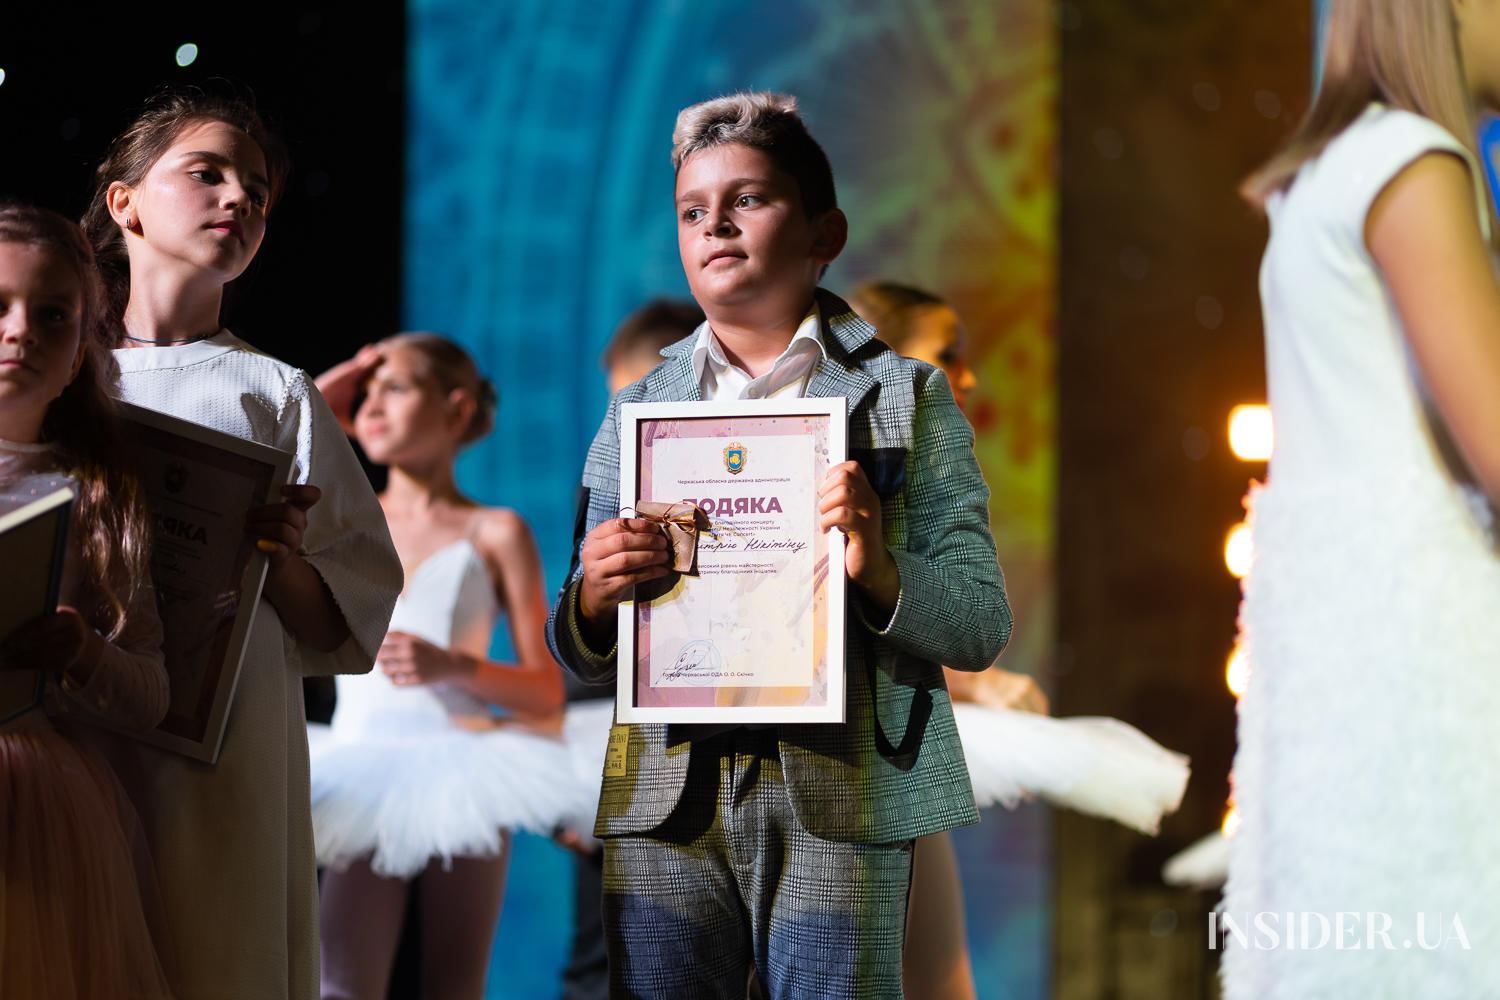 Звезды и юные таланты на одной сцене: благотворительный концерт «Дитя ЧЕ Concert» в Черкассах